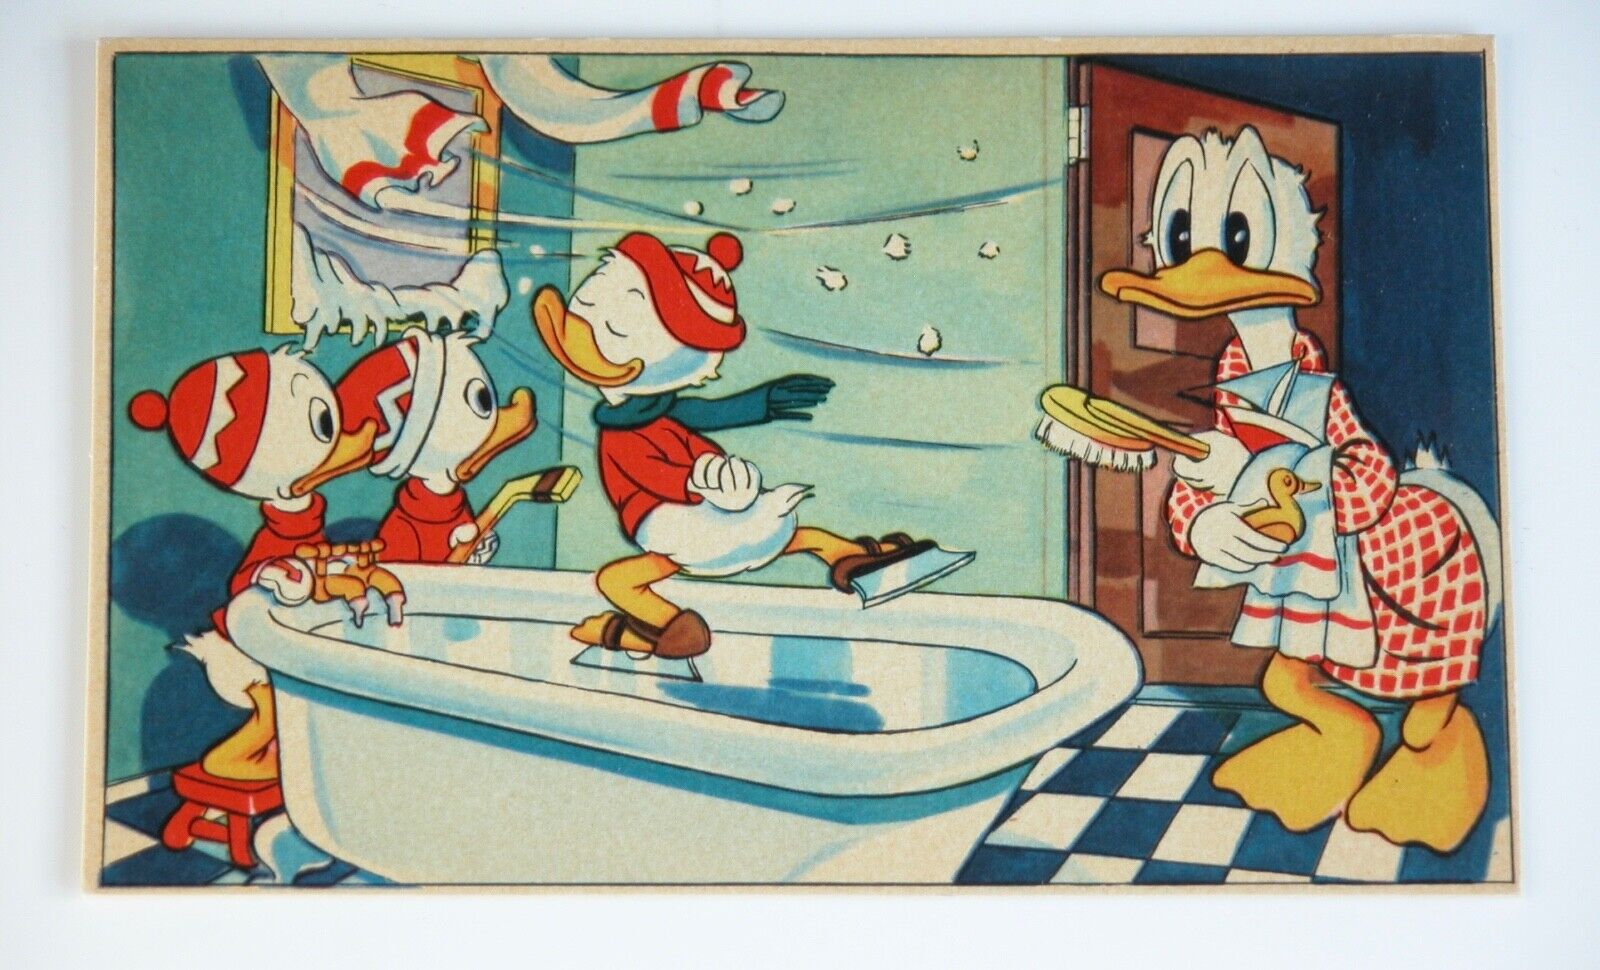 Vtg 1940s 50s Walt Disney Postcard Donald Duck Skate Sweden Forlag E.O. & CO